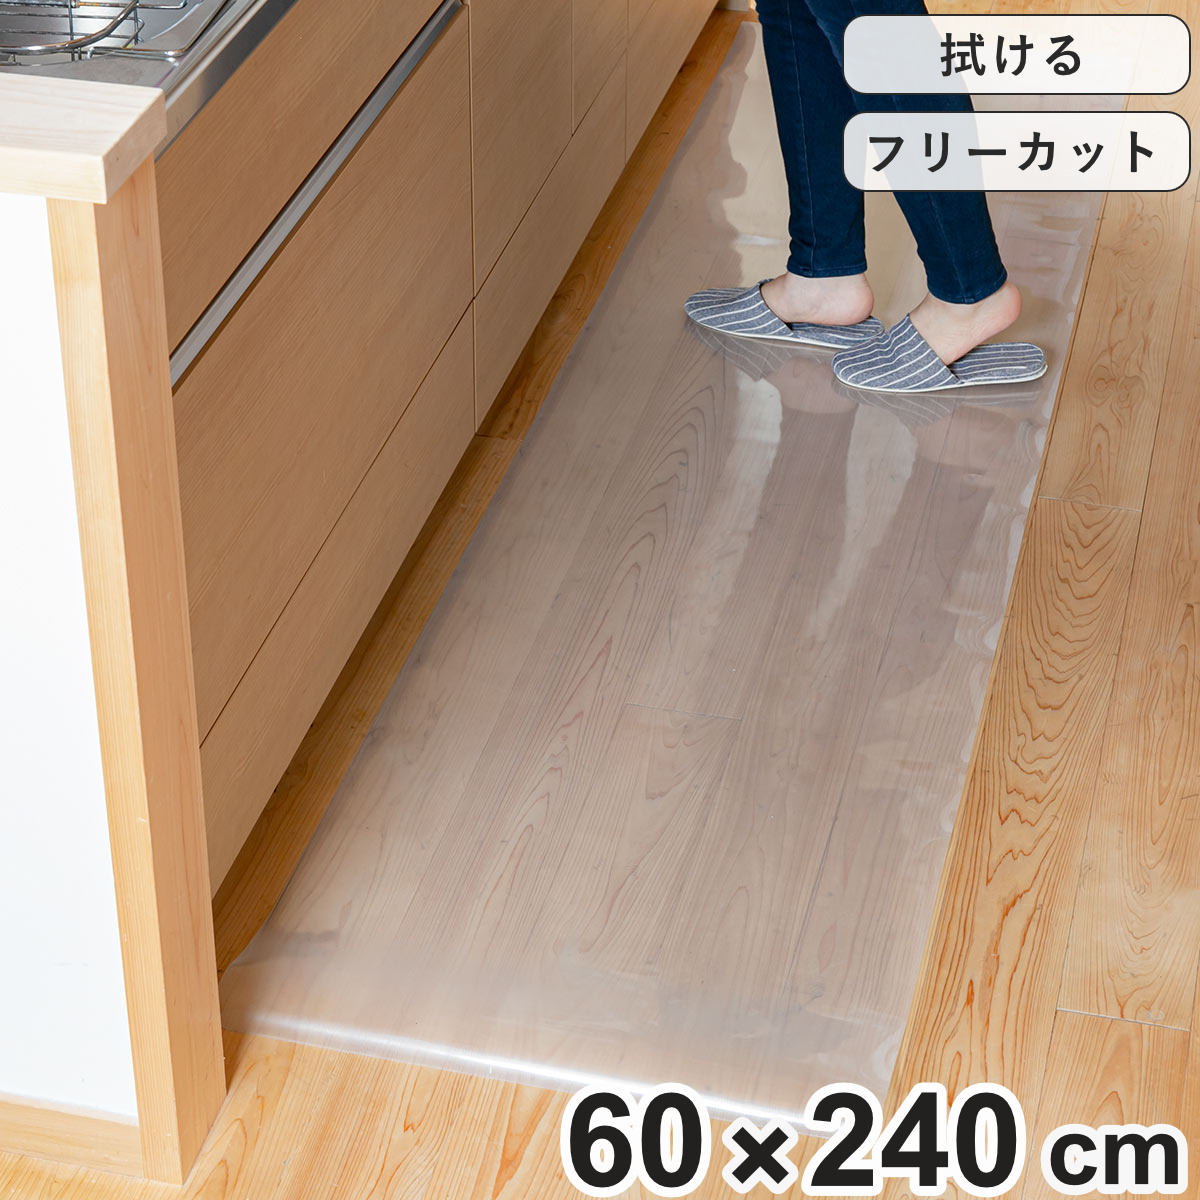 キッチンマット 拭ける 60×240cm クリア